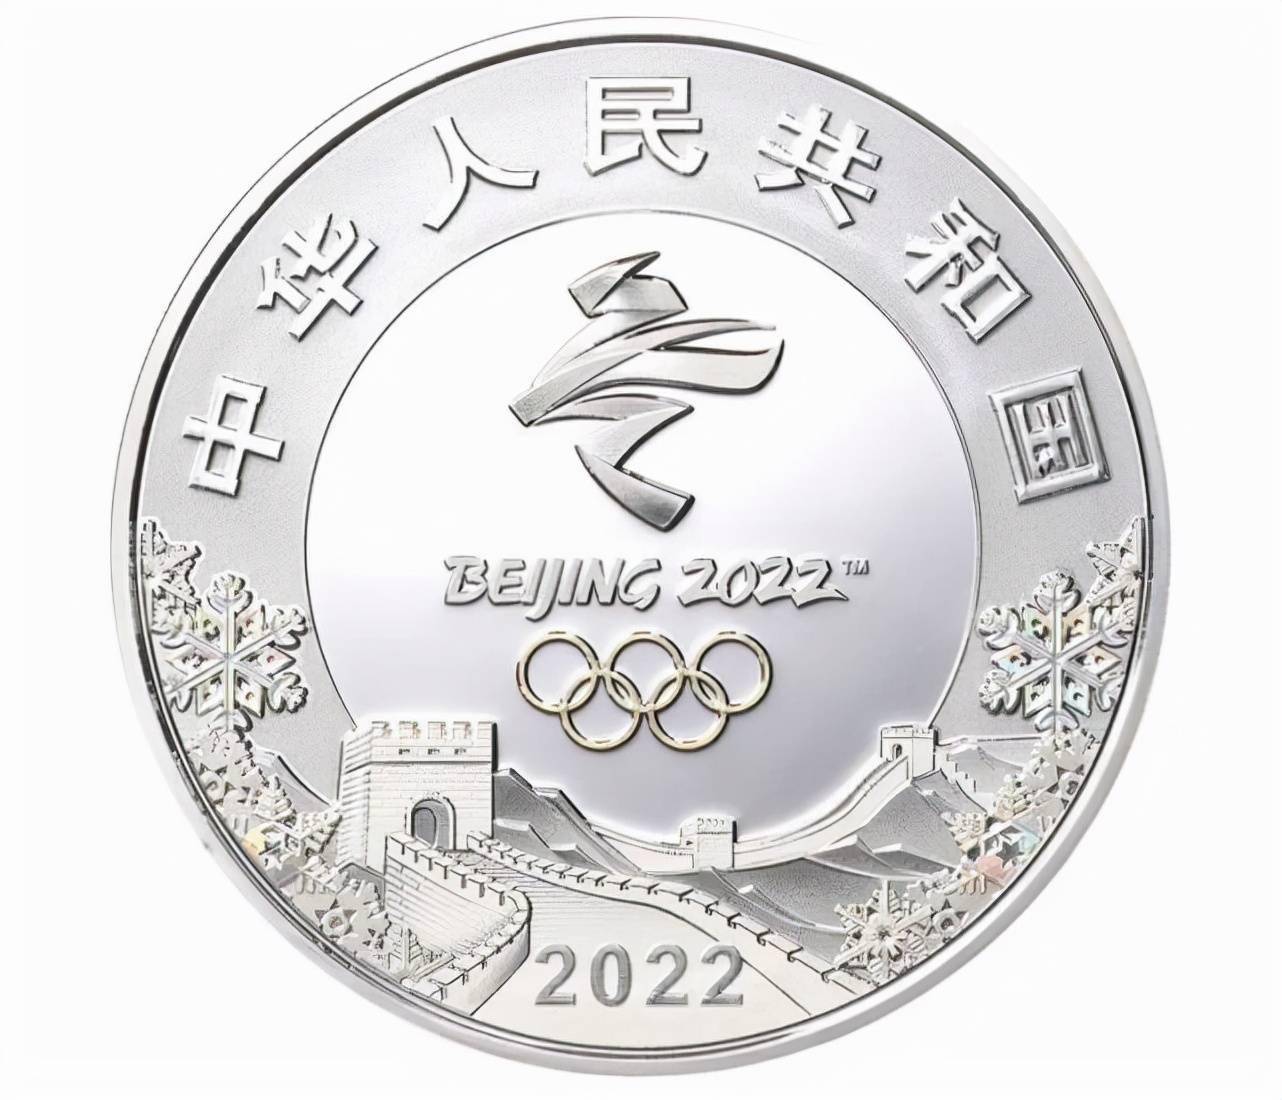 北京冬奥会纪念币图案图片